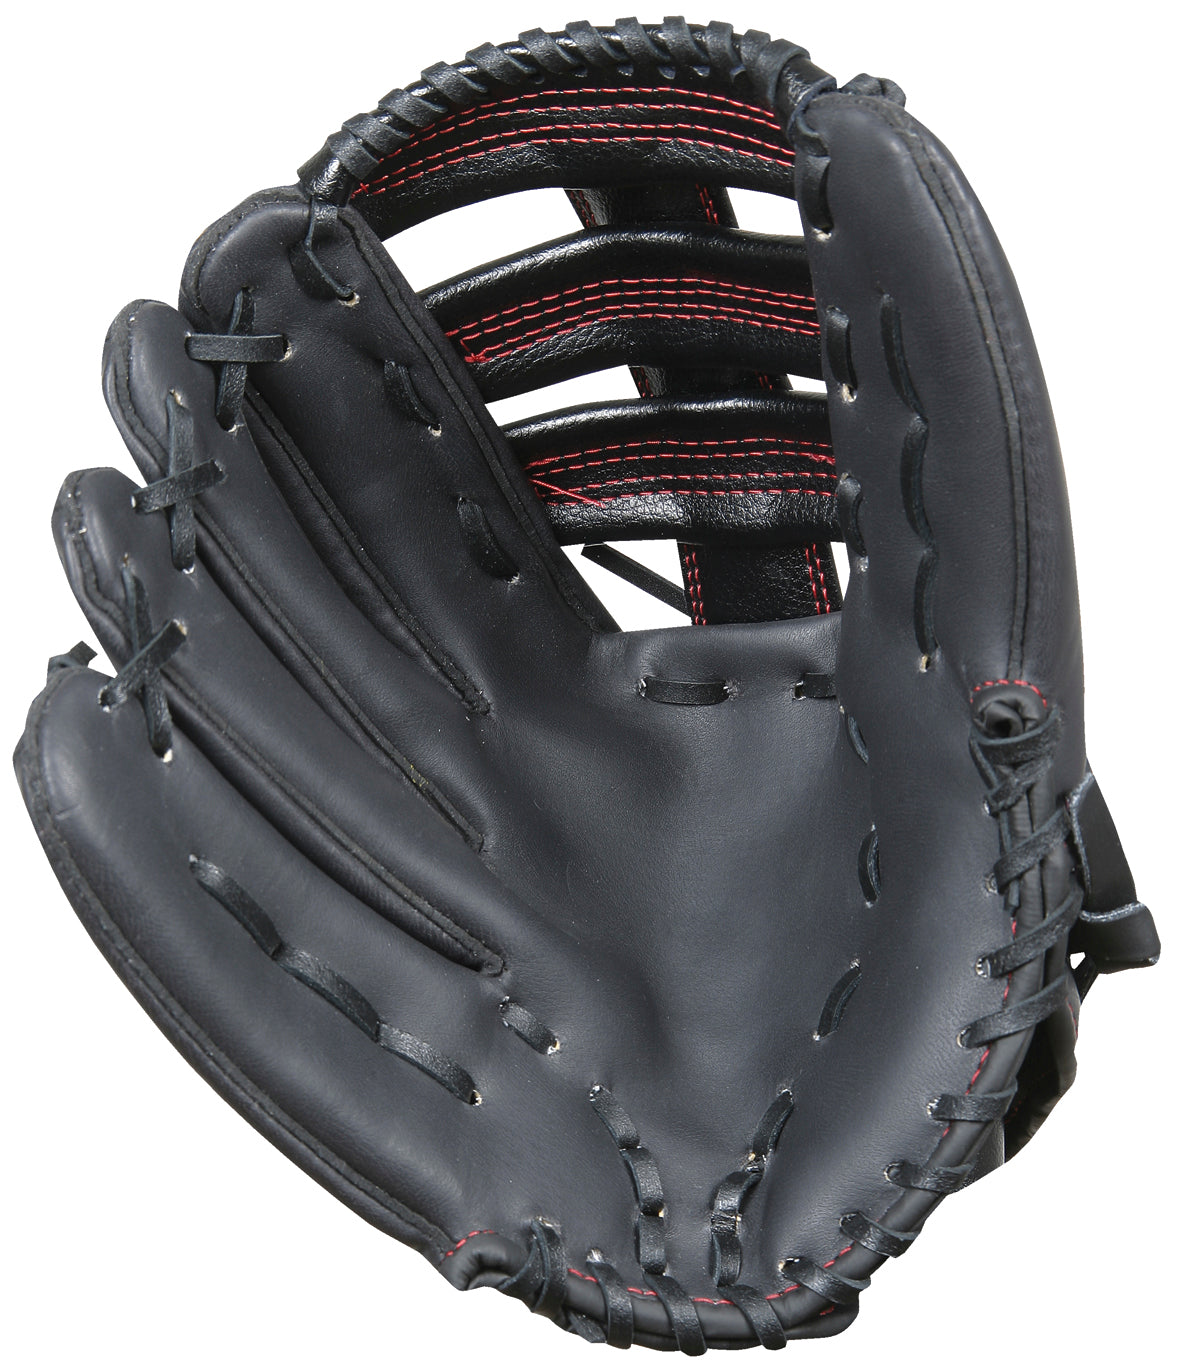 CXED14TrainingEquipment Baseball Gloves right